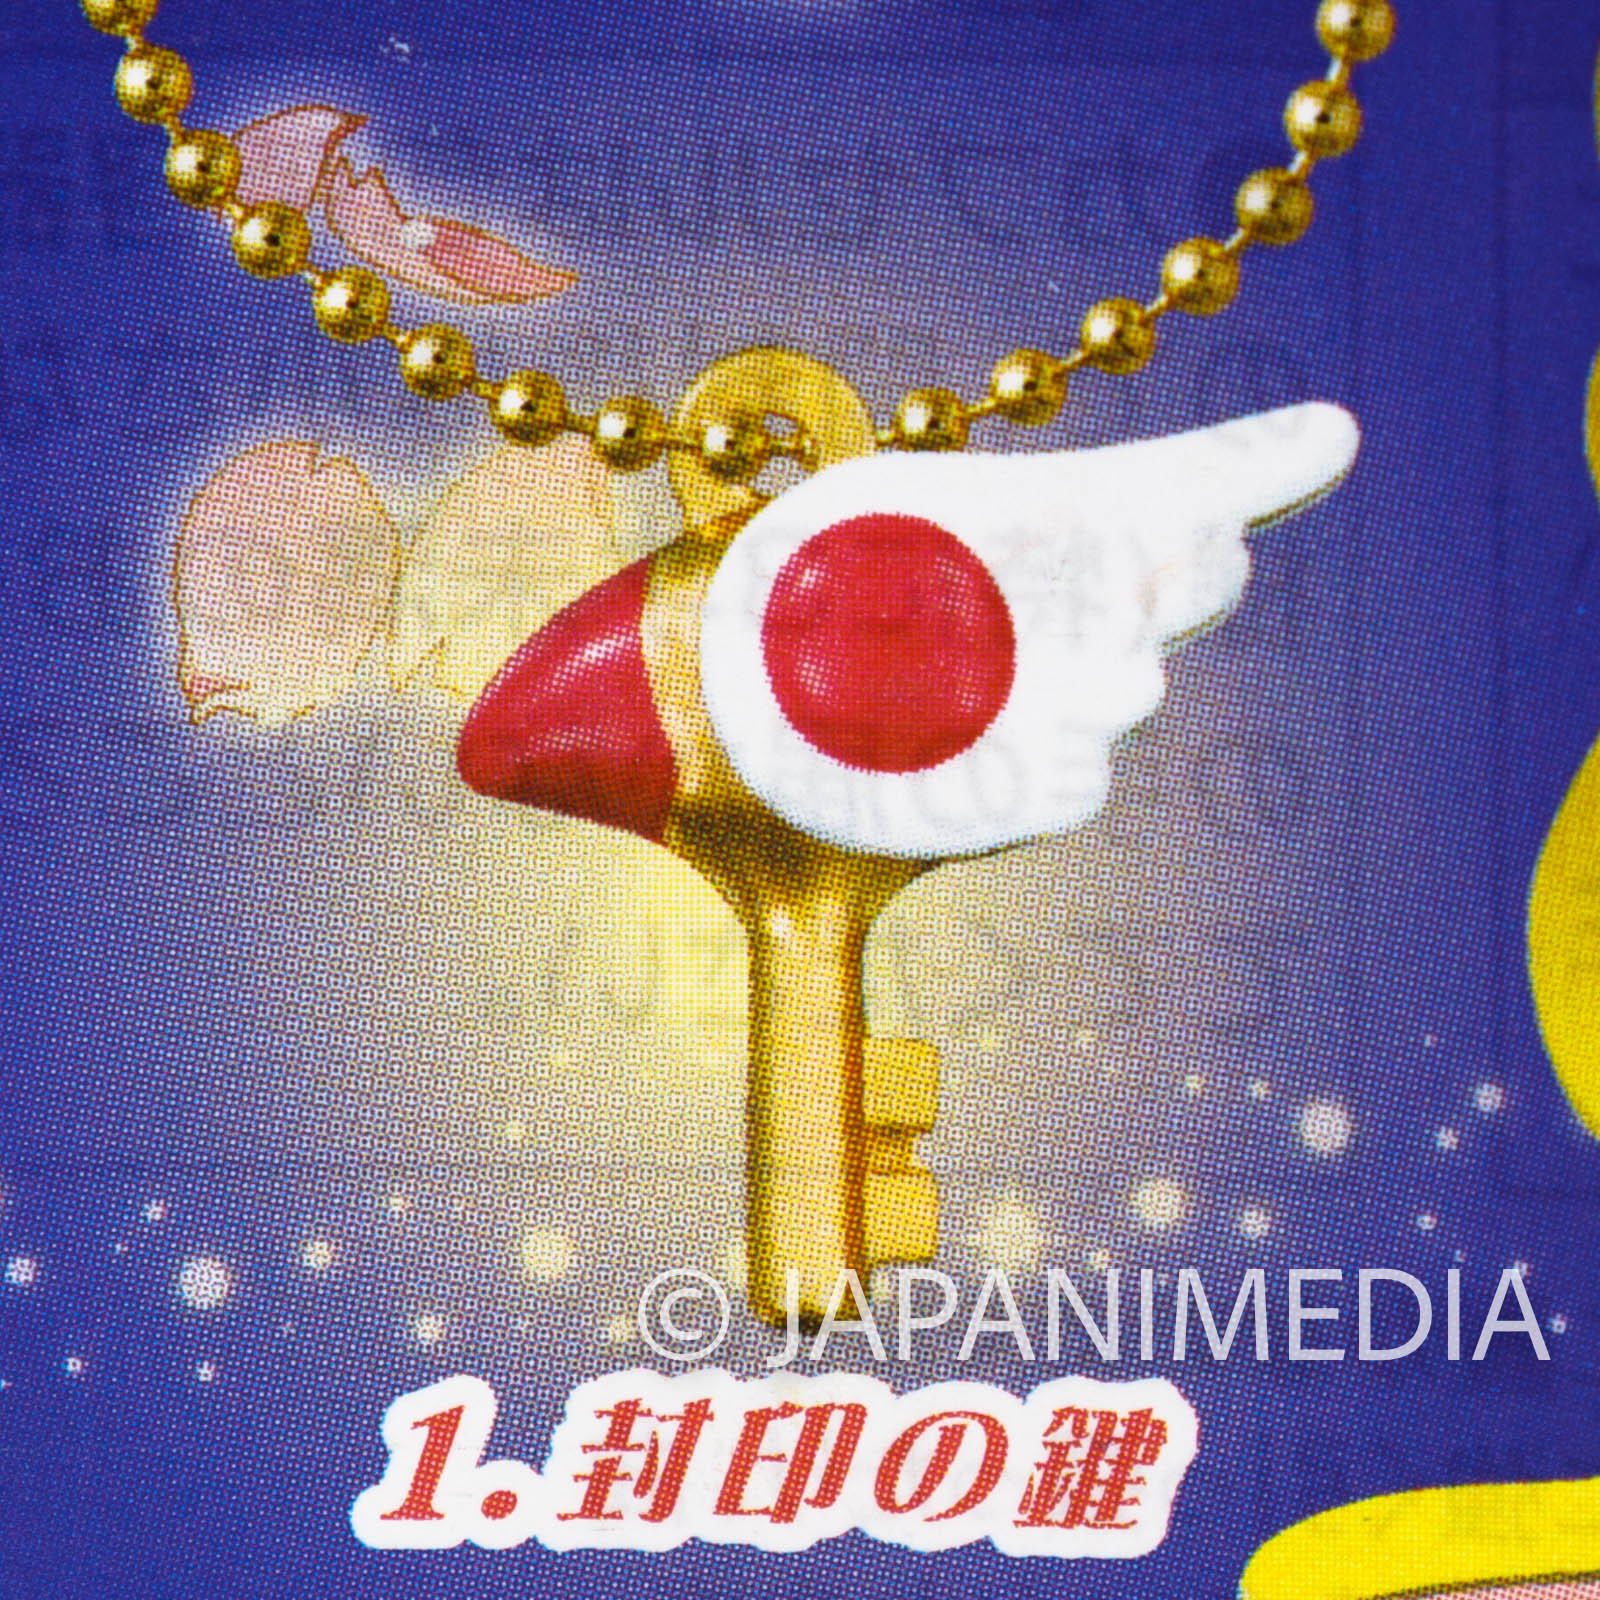 Cardcaptor Sakura Clow Key Die casting Charm Ballchain JAPAN